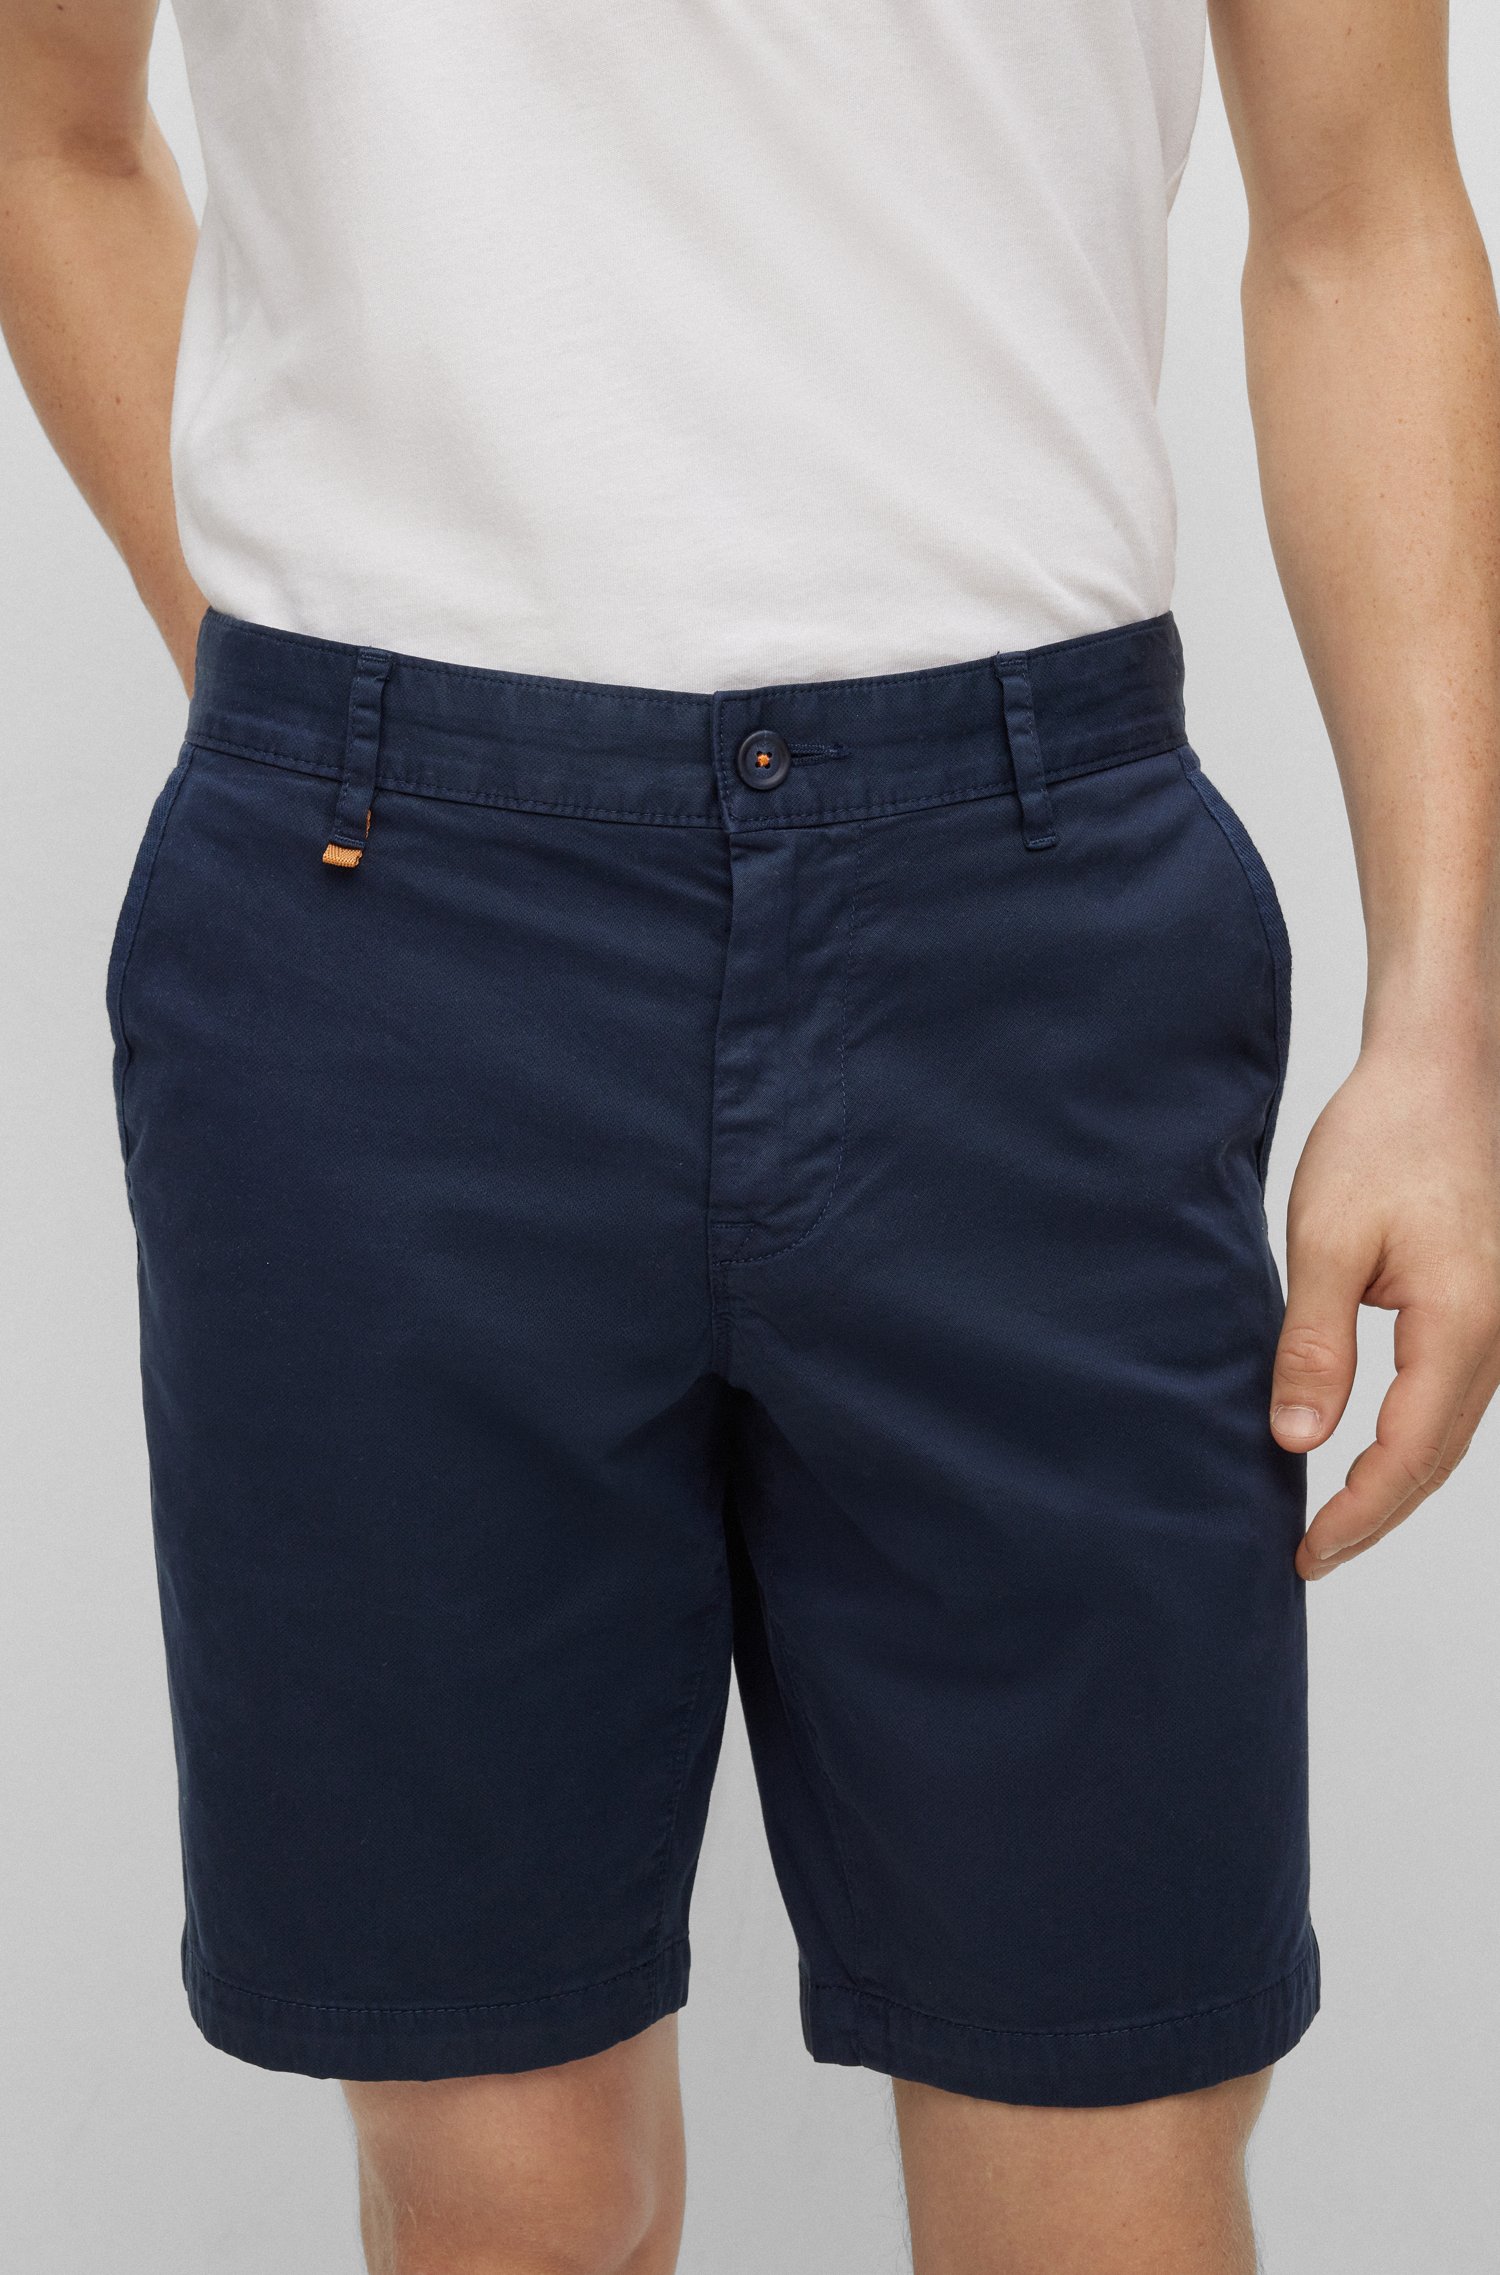 Shorts slim fit en sarga de algodón elástico con estampado